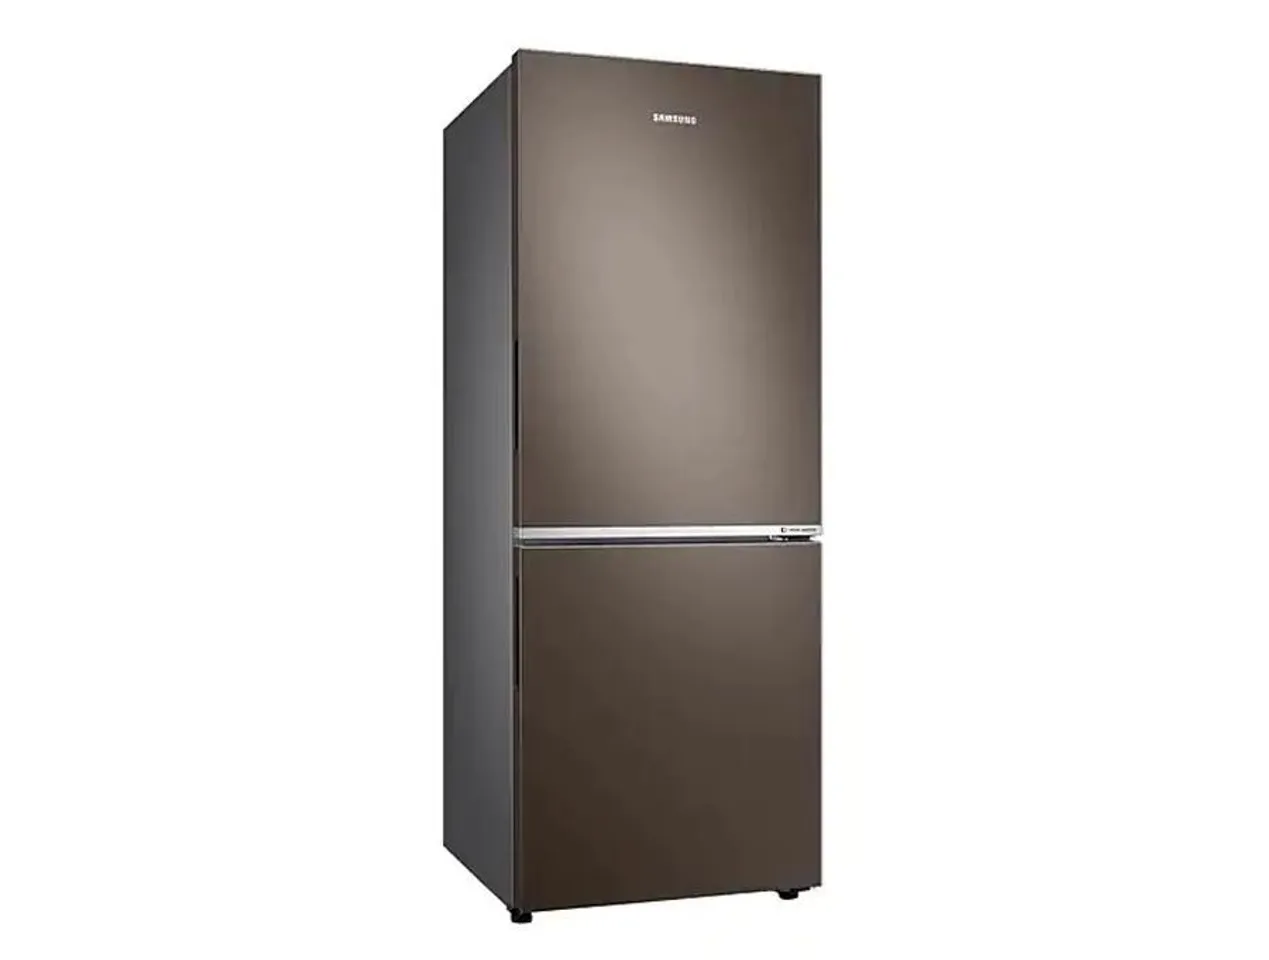 Tủ lạnh Samsung Inverter 280 lít RB27N4010BY/SV với tông màu nâu sang trọng 